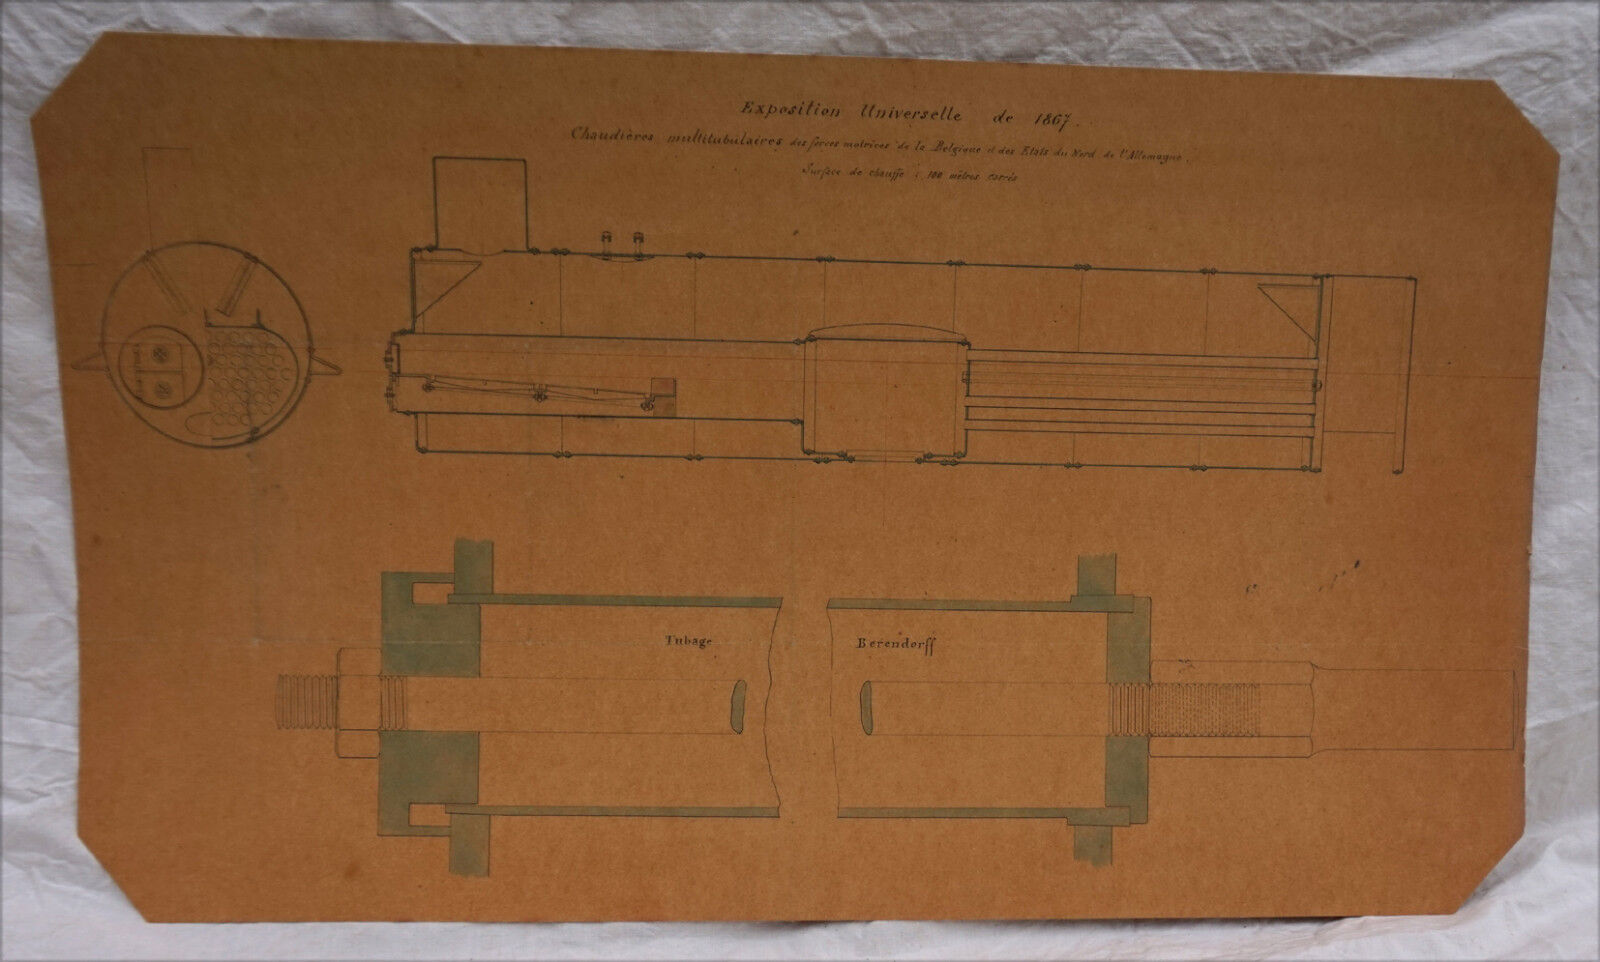 1867 Paris Universal Exhibition Steam Engine Prime Force Boiler Section Plan